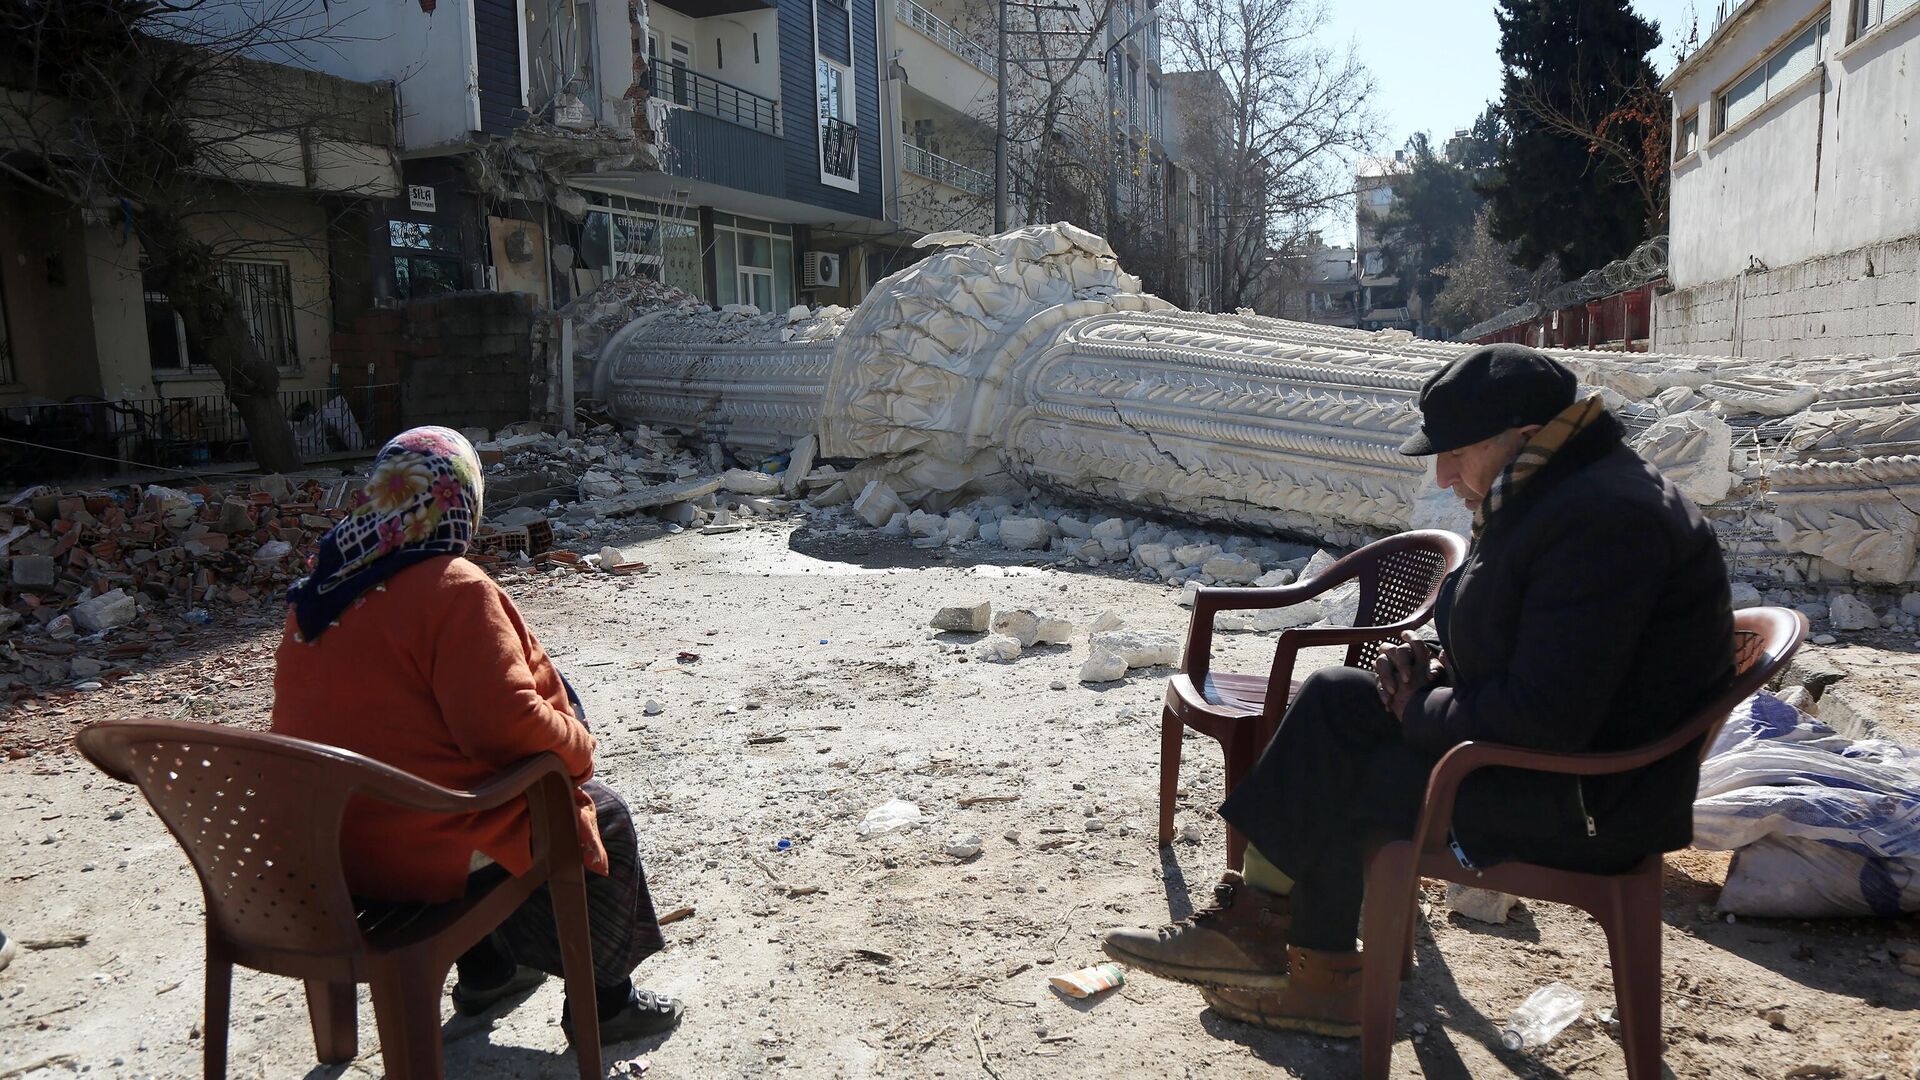 Жители на улице пострадавшего от землетрясения турецкого города Адыямана - РИА Новости, 1920, 22.03.2023